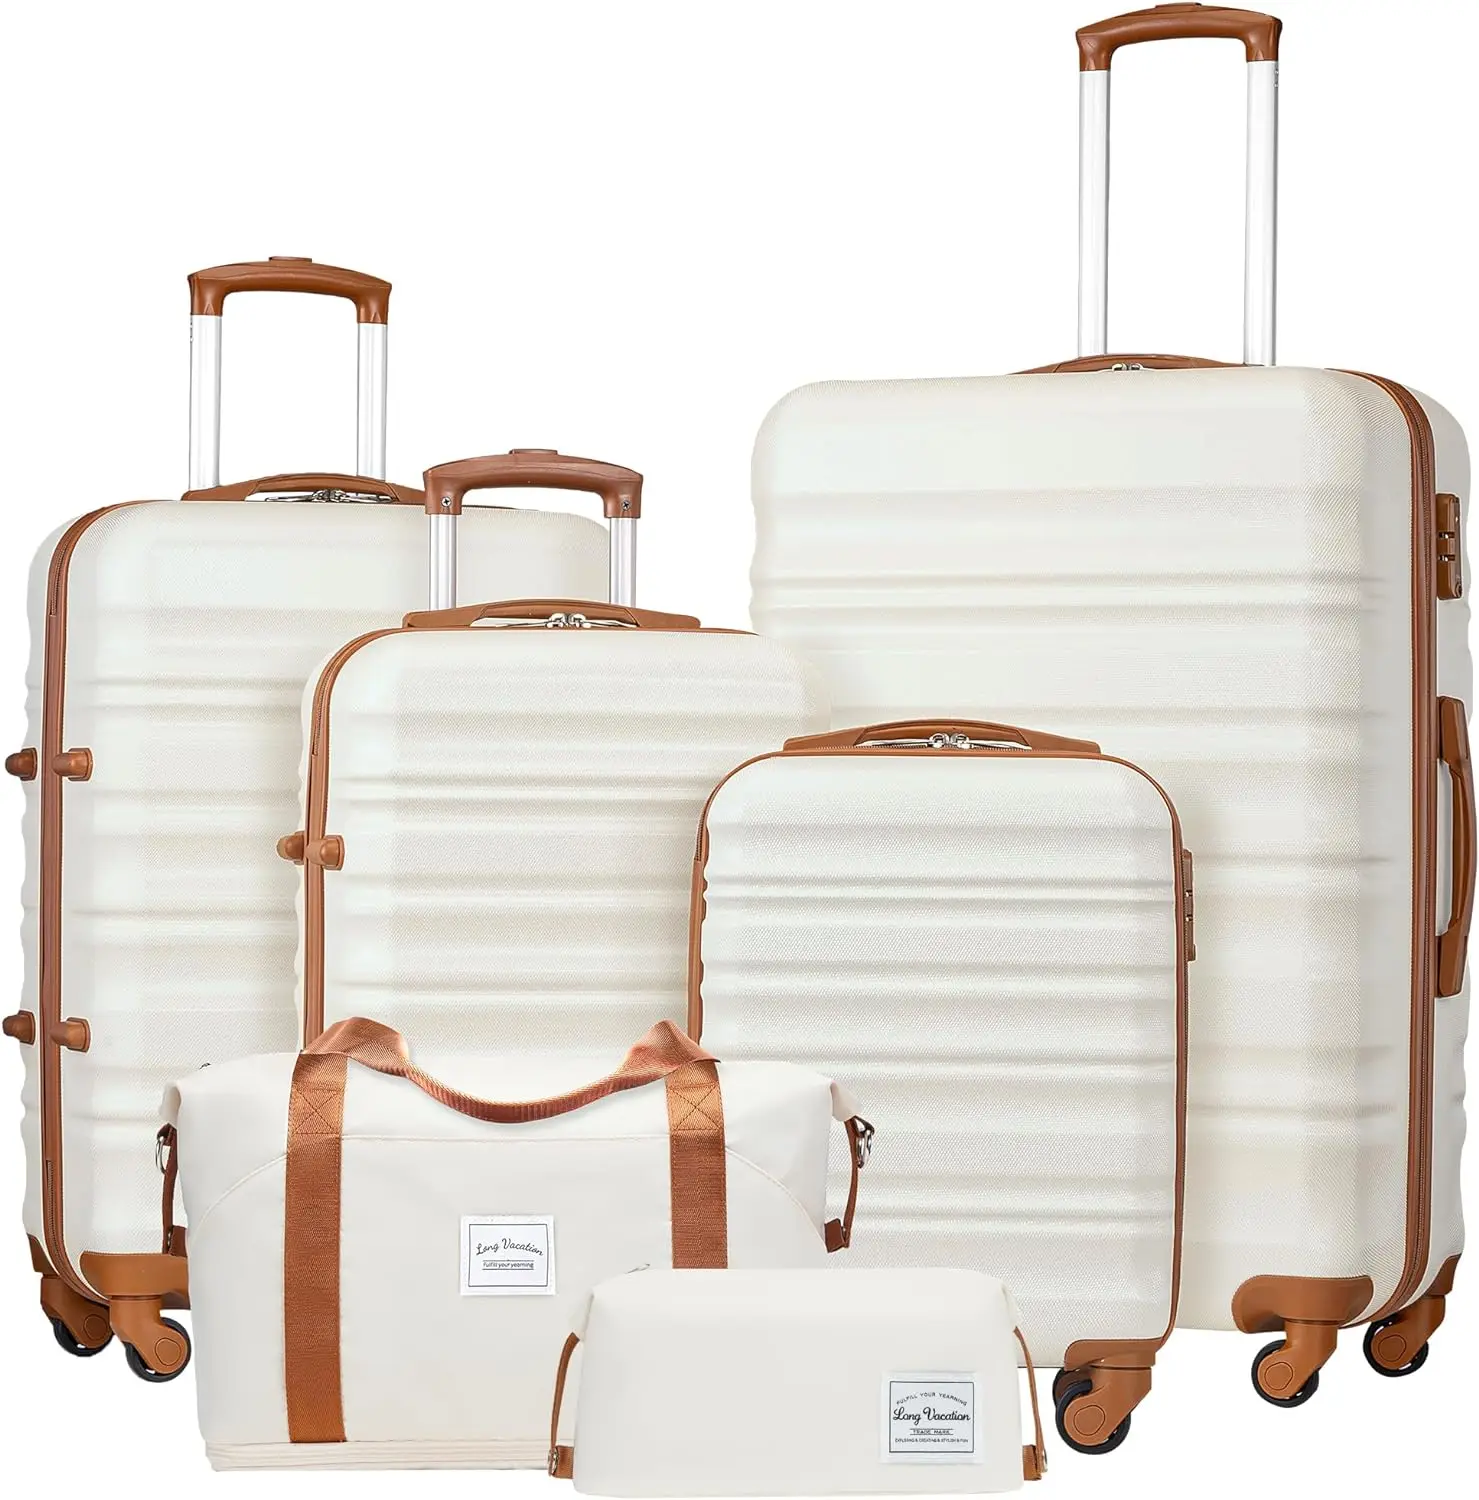 

Длинный комплект багажа для отпуска, 4 предмета, набор чемоданов из АБС-пластика, жесткий корпус, TSA замок, Спиннер, колеса, чемодан для ручной клади (бело-коричневый, 6 pi